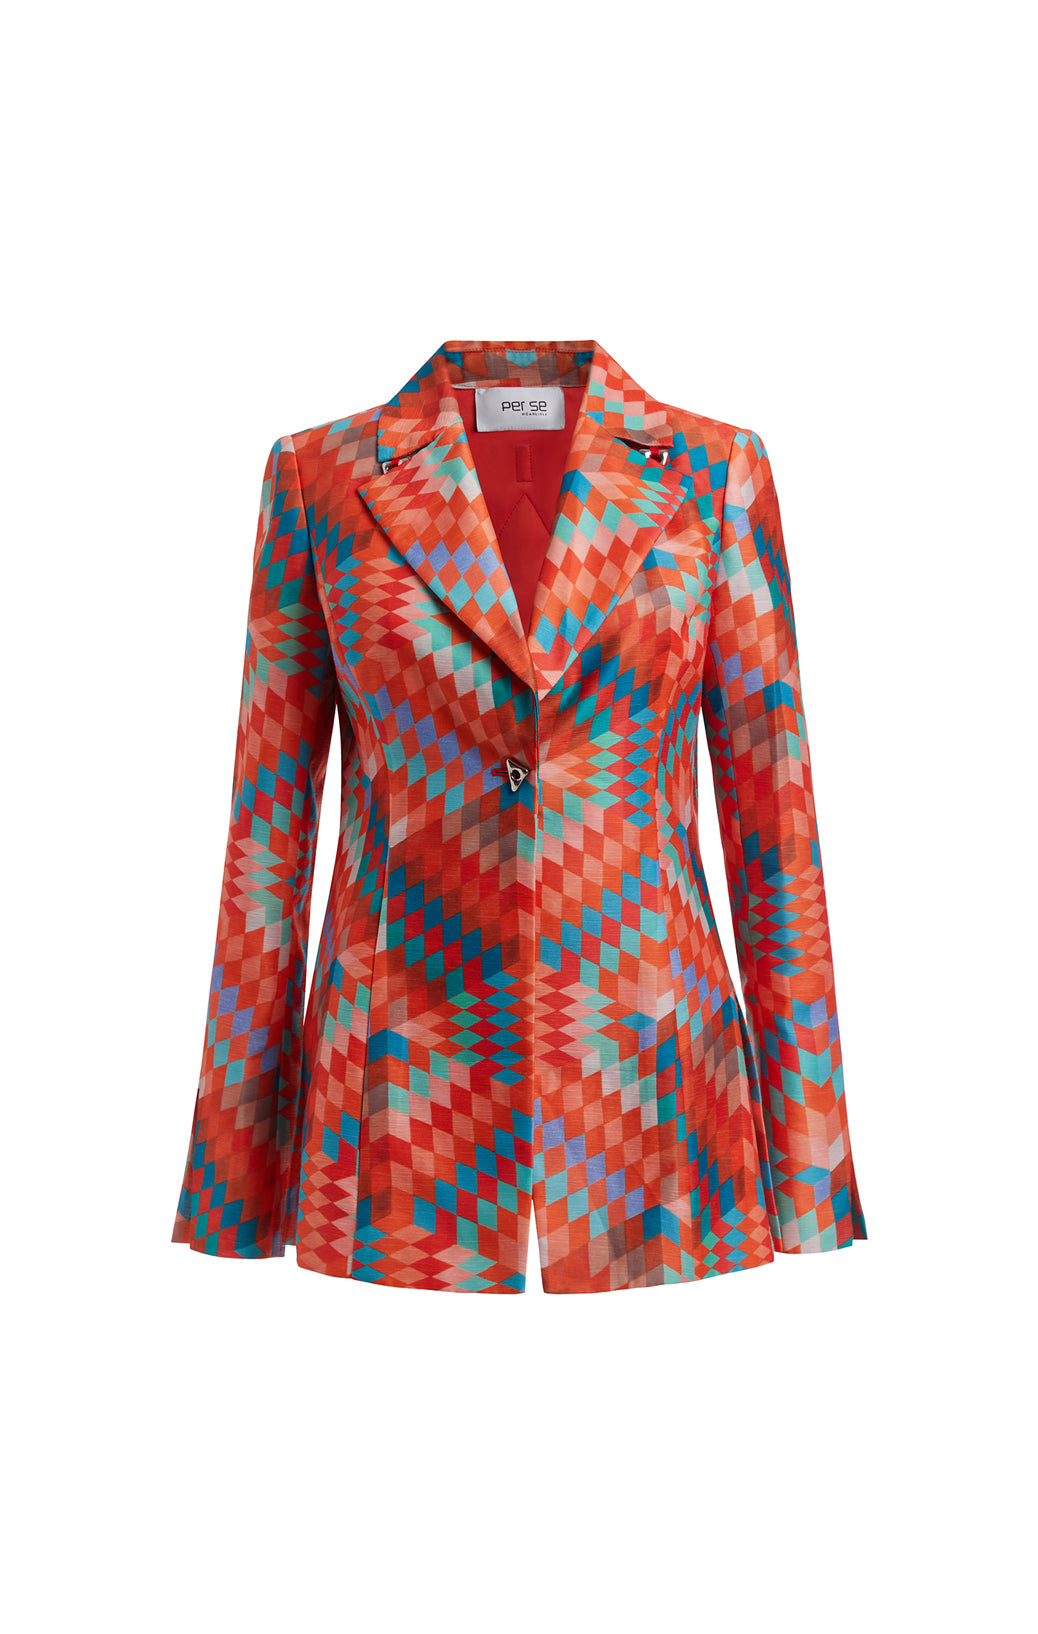 Coats & Jackets - Carlisle Collection - Luxury Women's Clothing